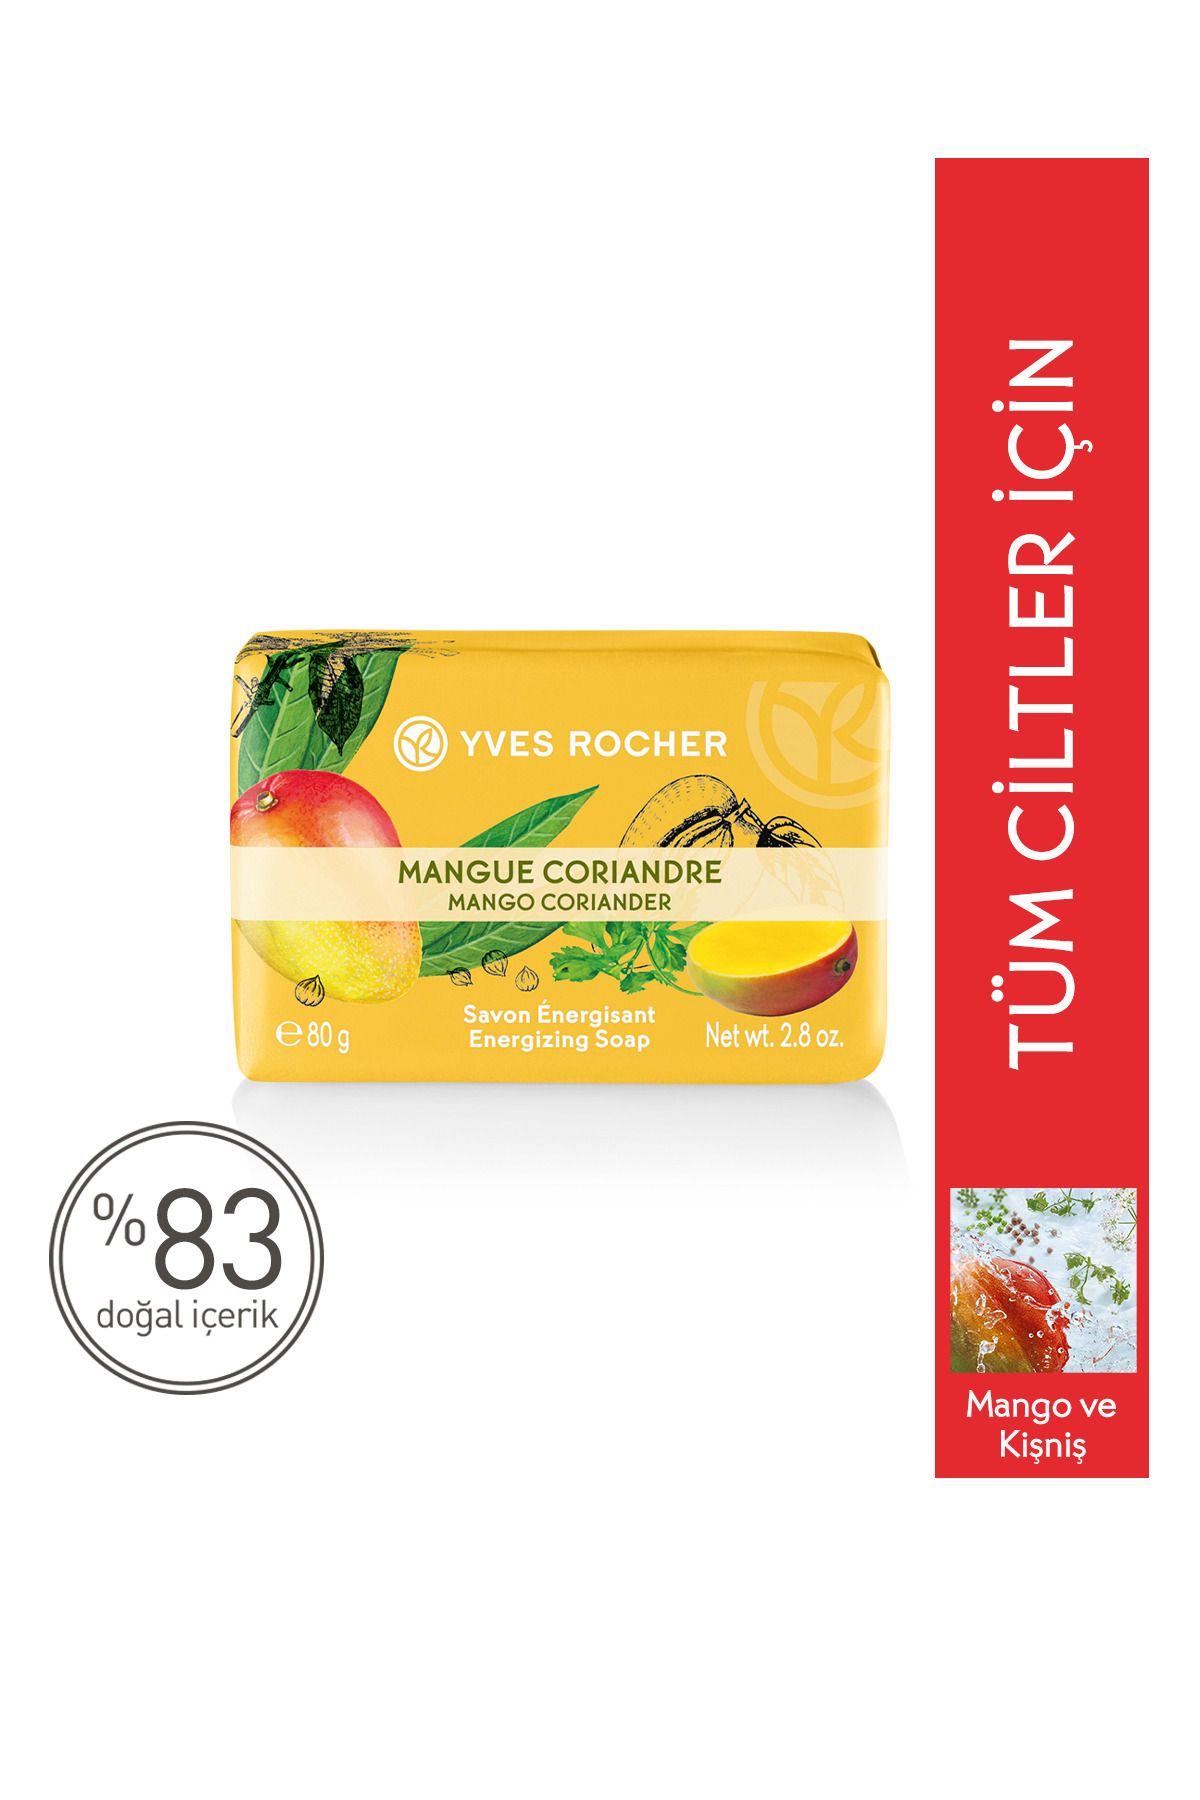 Yves Rocher Katı Sabun- Canlandırıcı Mango Kişniş- 80g-44059